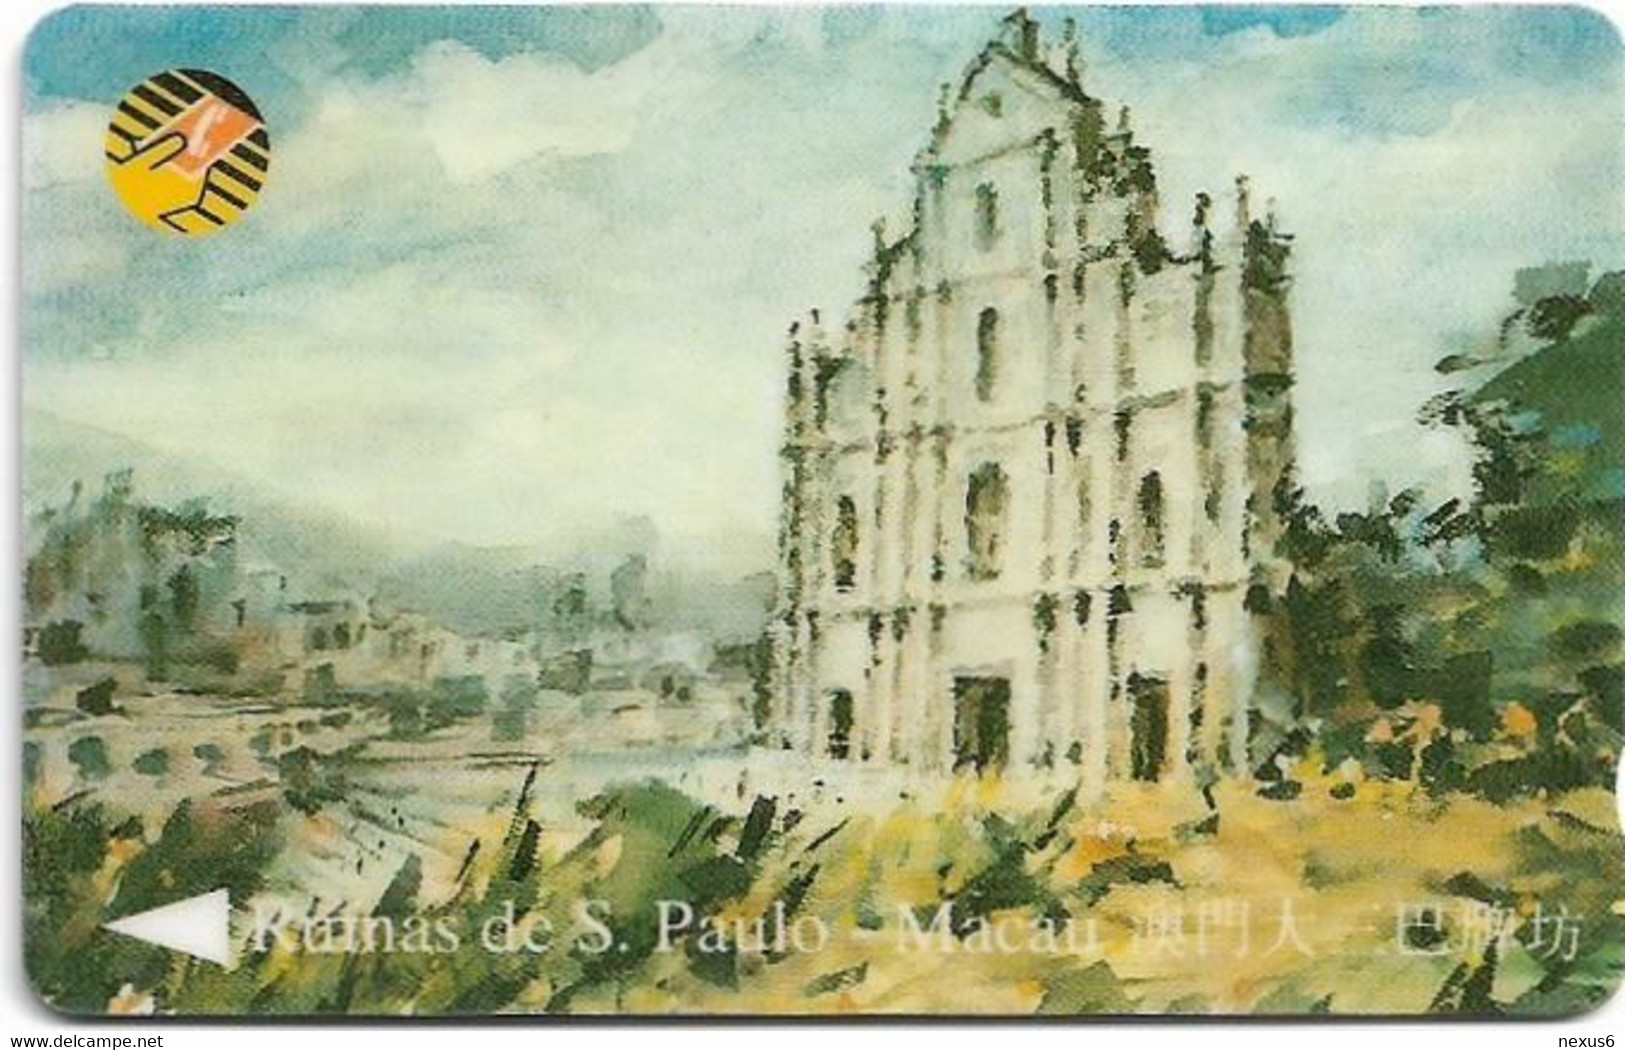 Macau - CTM (GPT) - Paintings - Ruinas De S. Paulo - 9MACB - 1994, Used - Macau